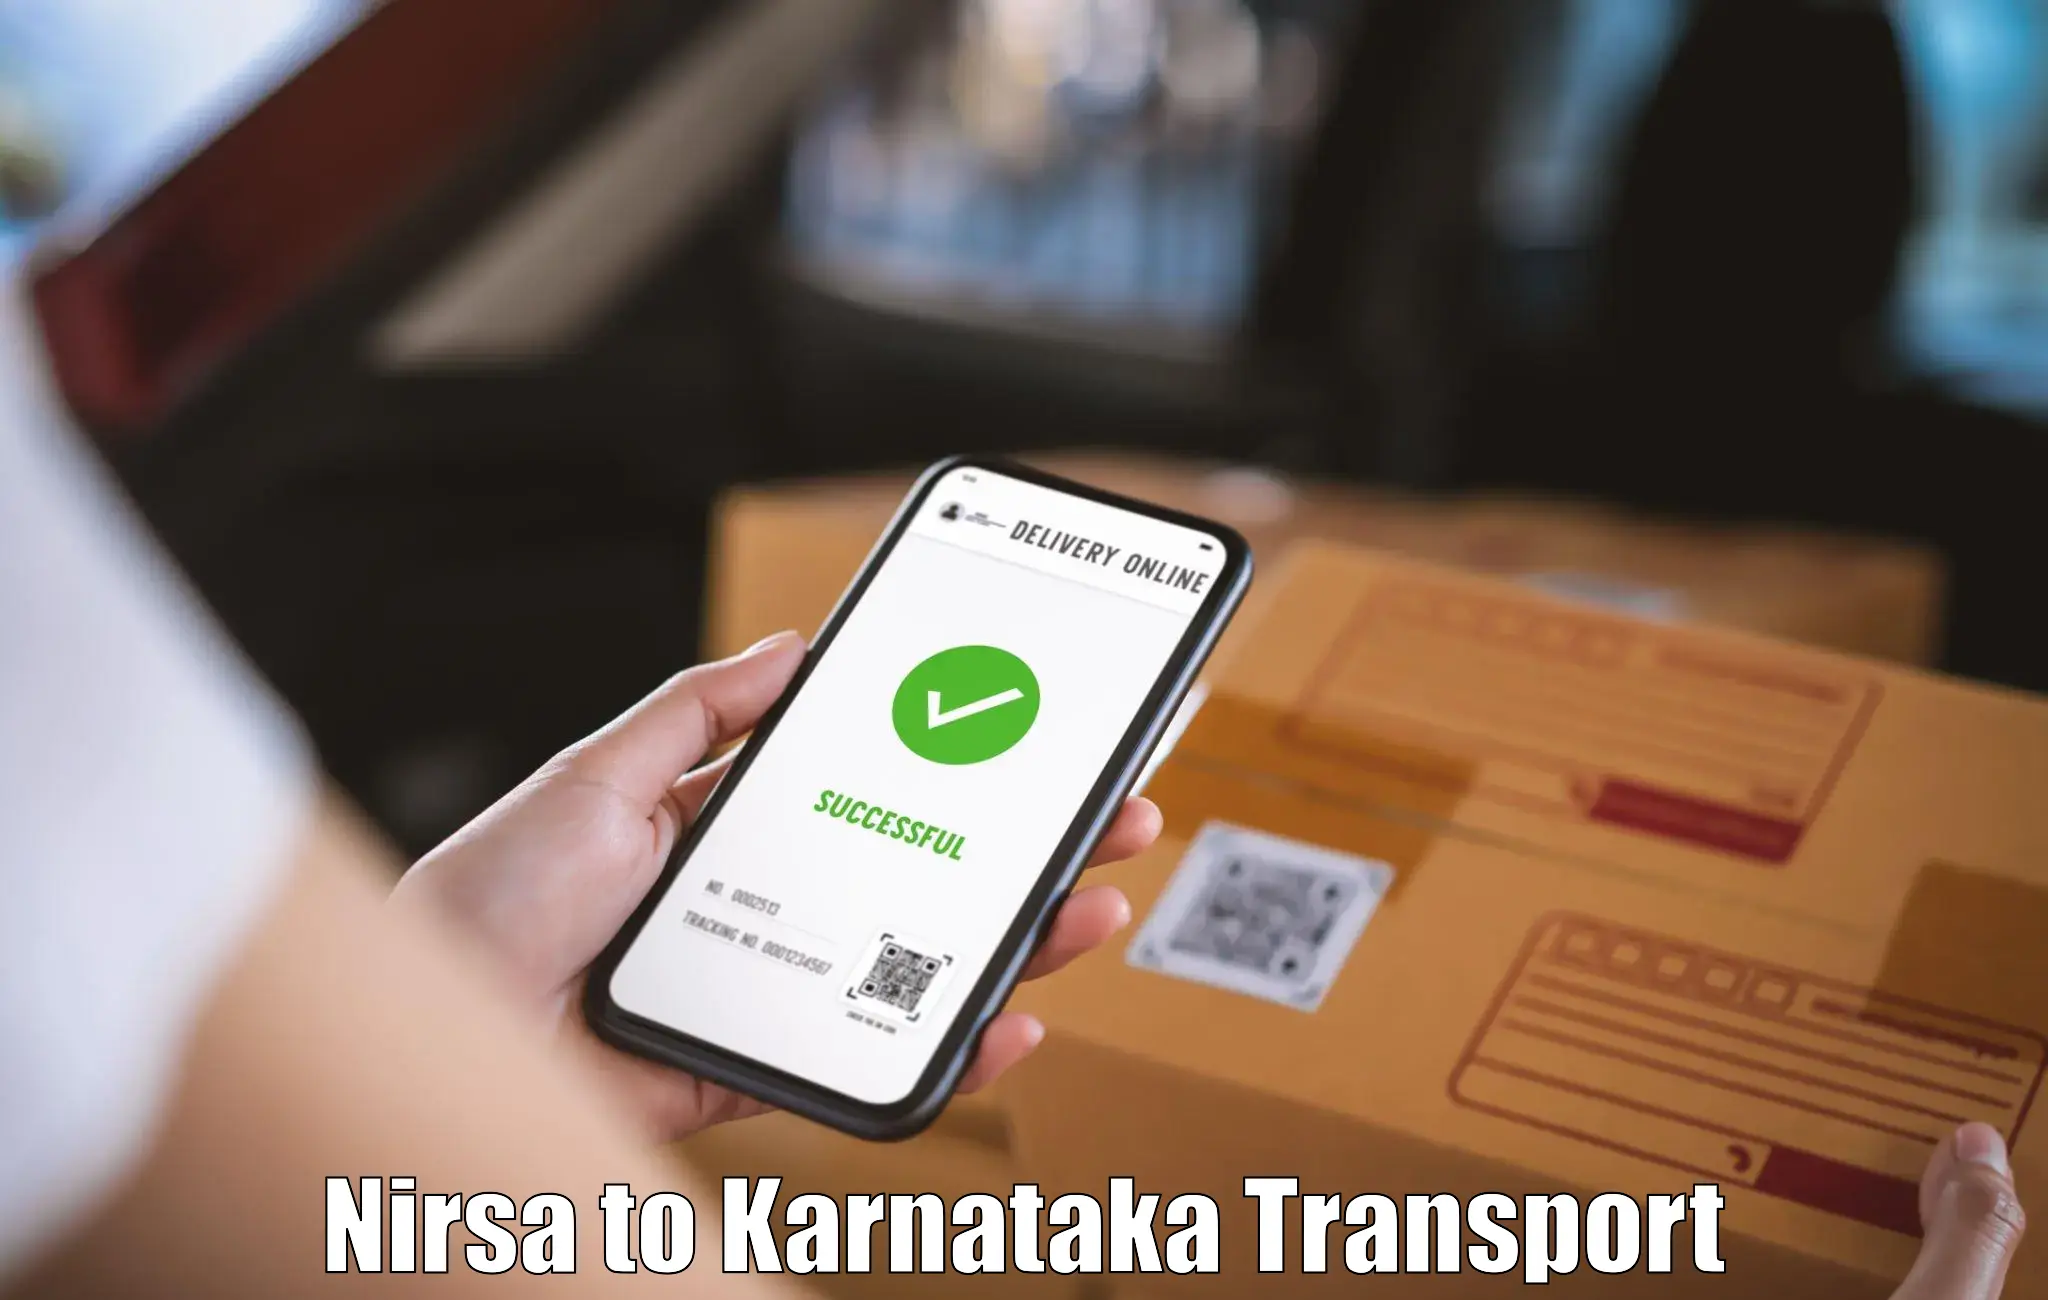 Online transport service Nirsa to Karnataka